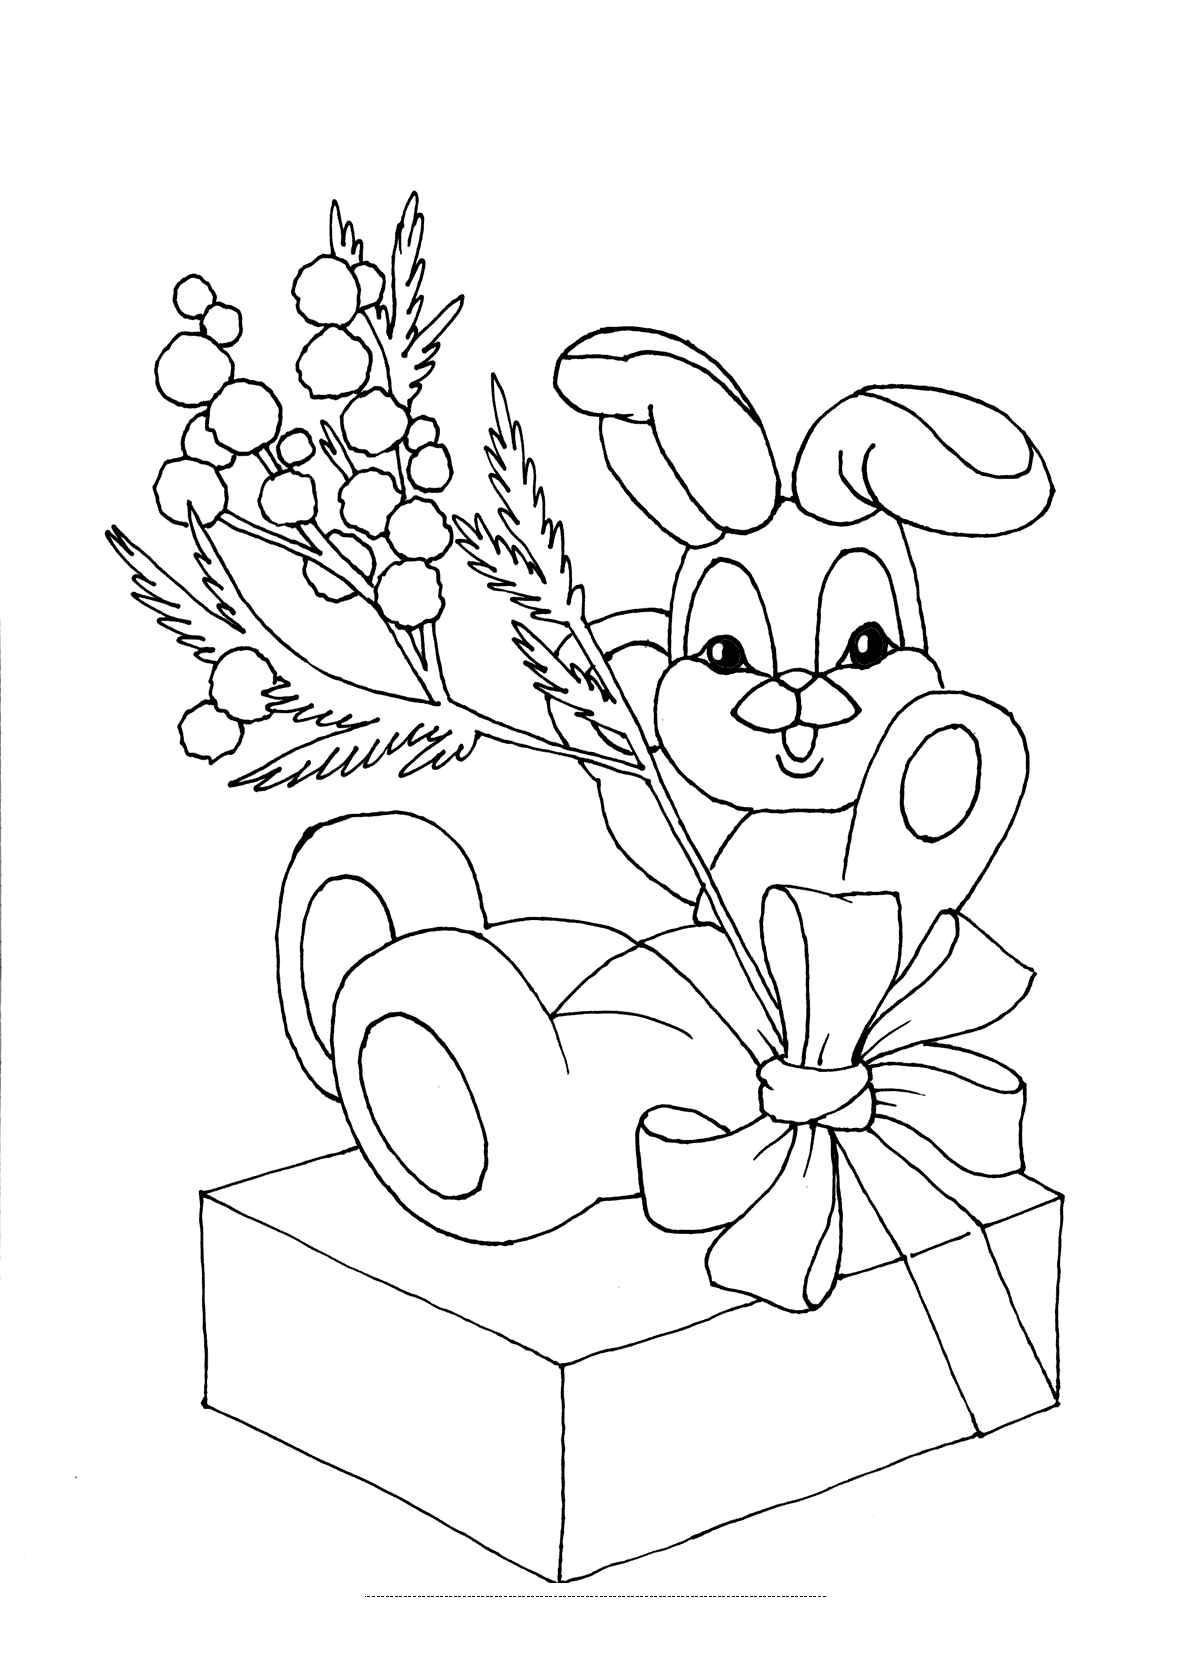 Плюшевый зайчик на коробке с подарками